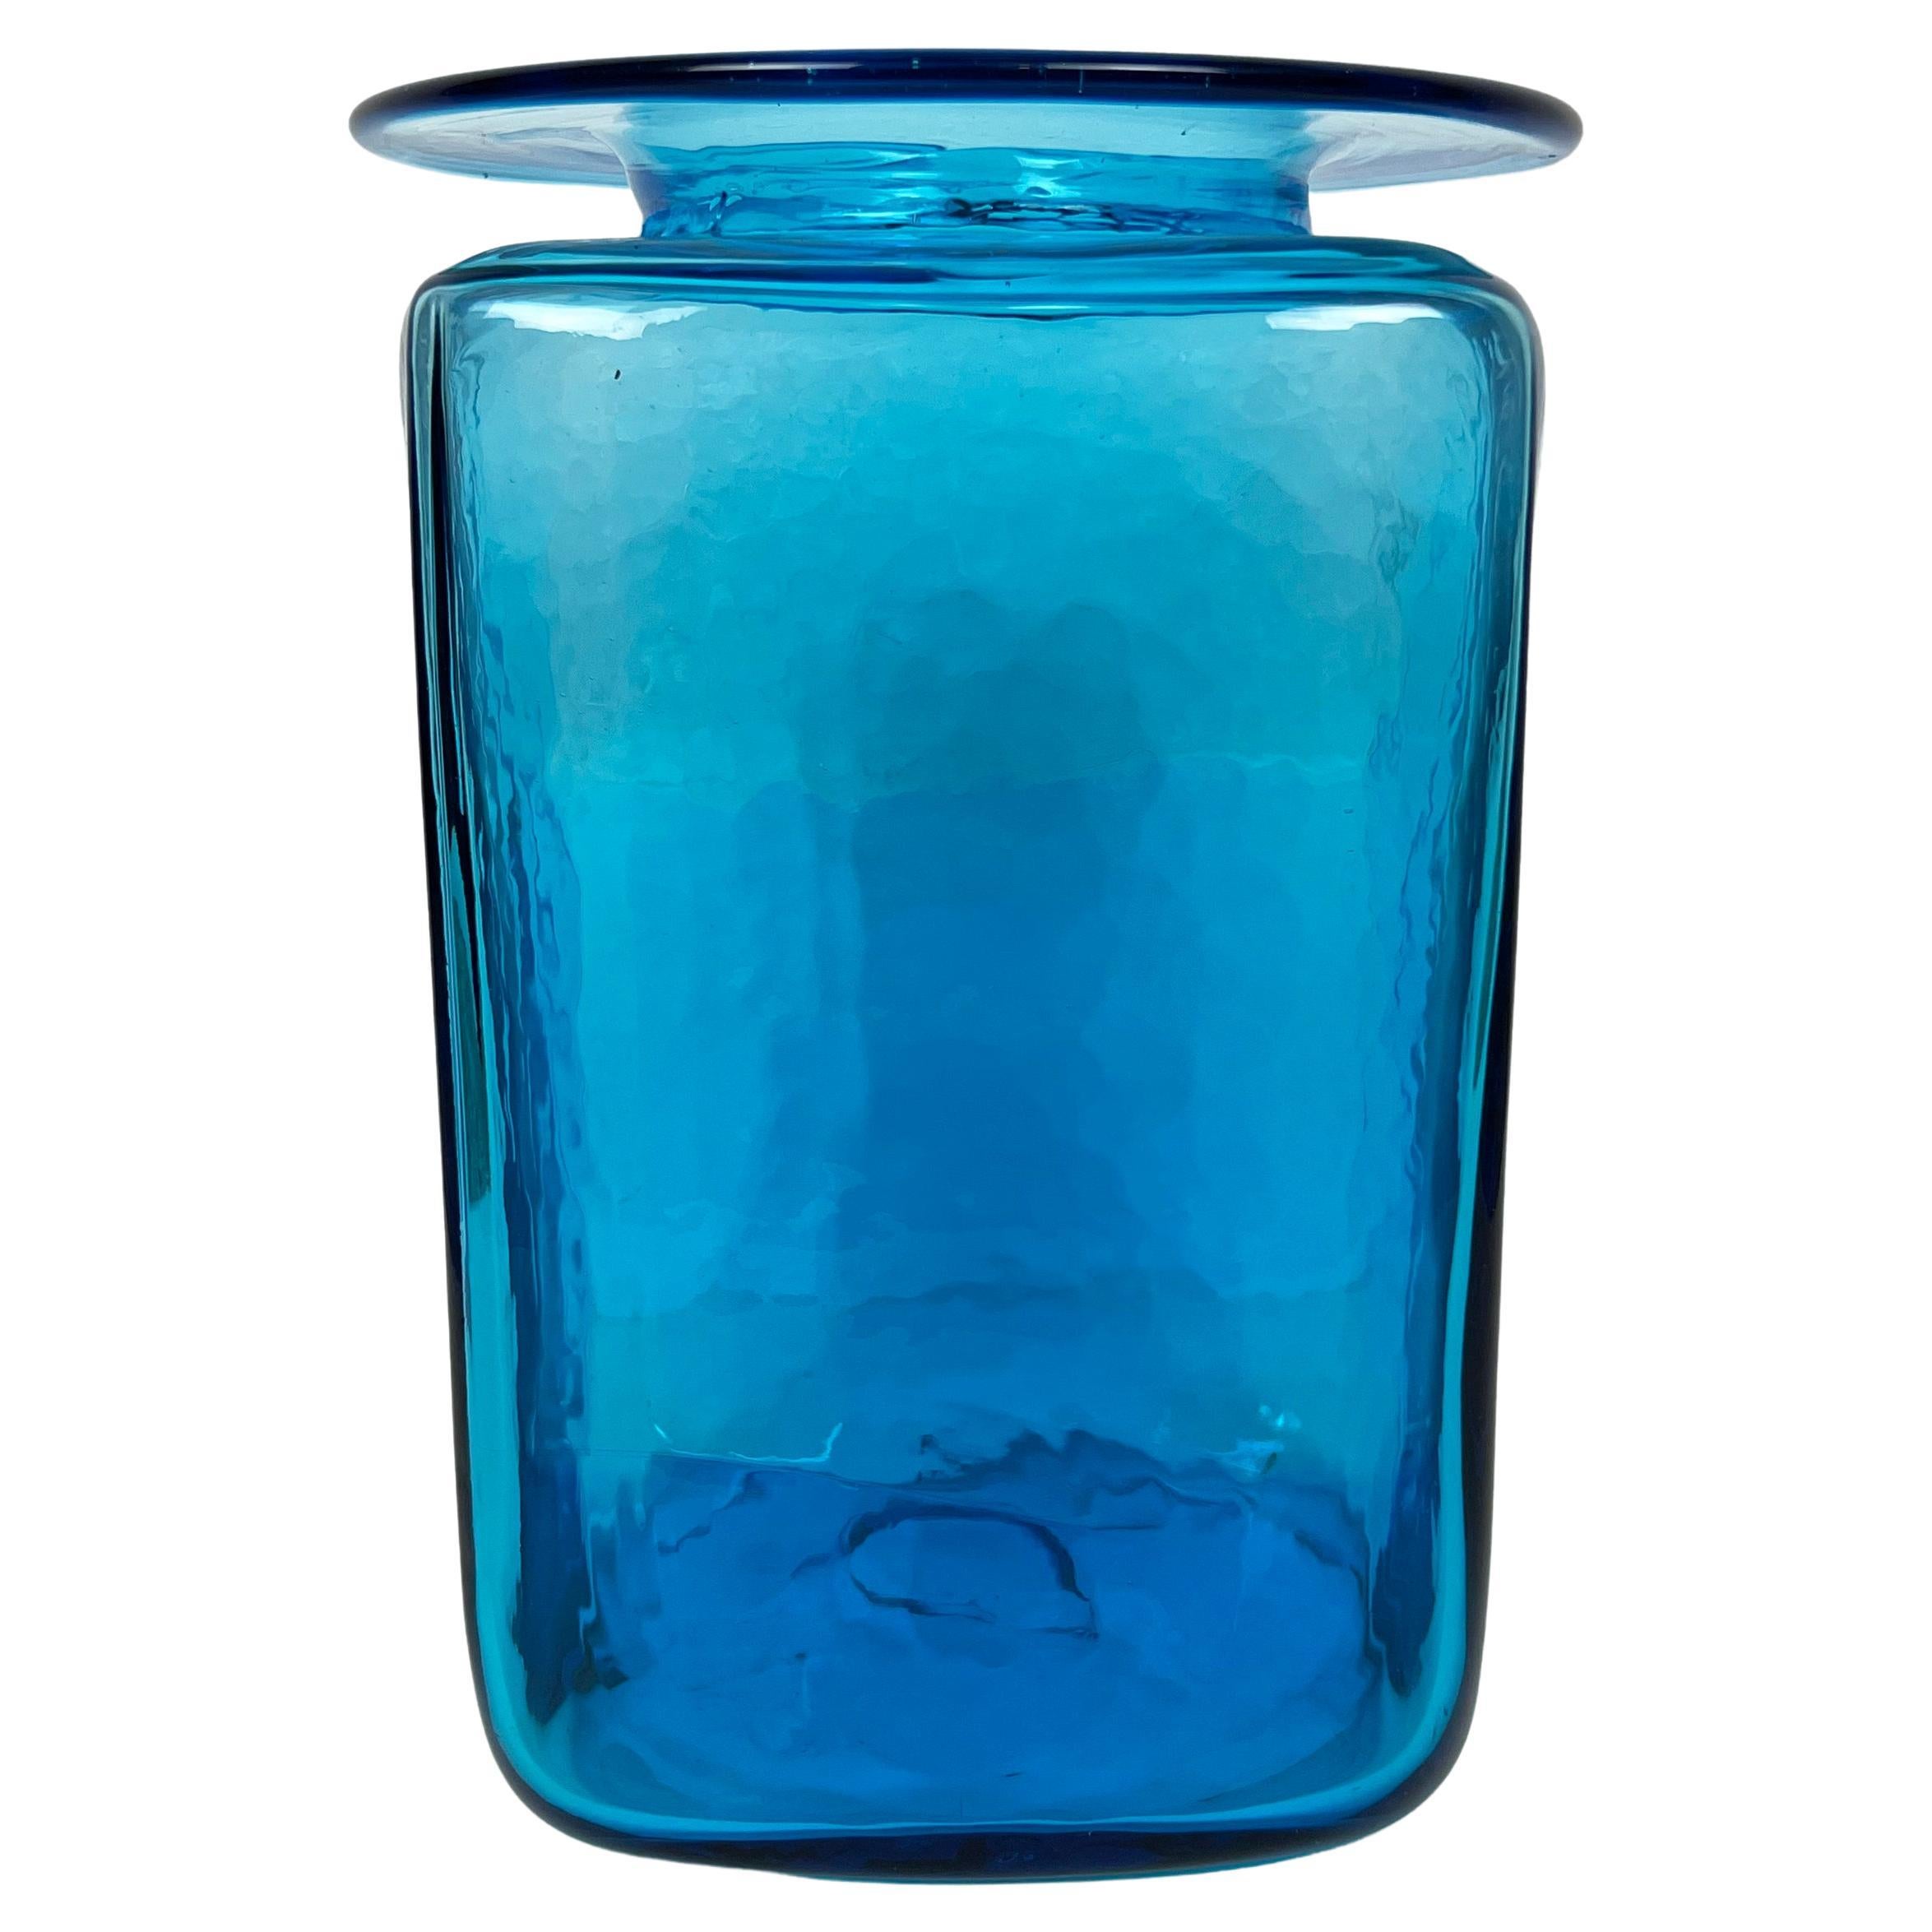 Gran jarrón de vidrio soplado azul turquesa de Blenko